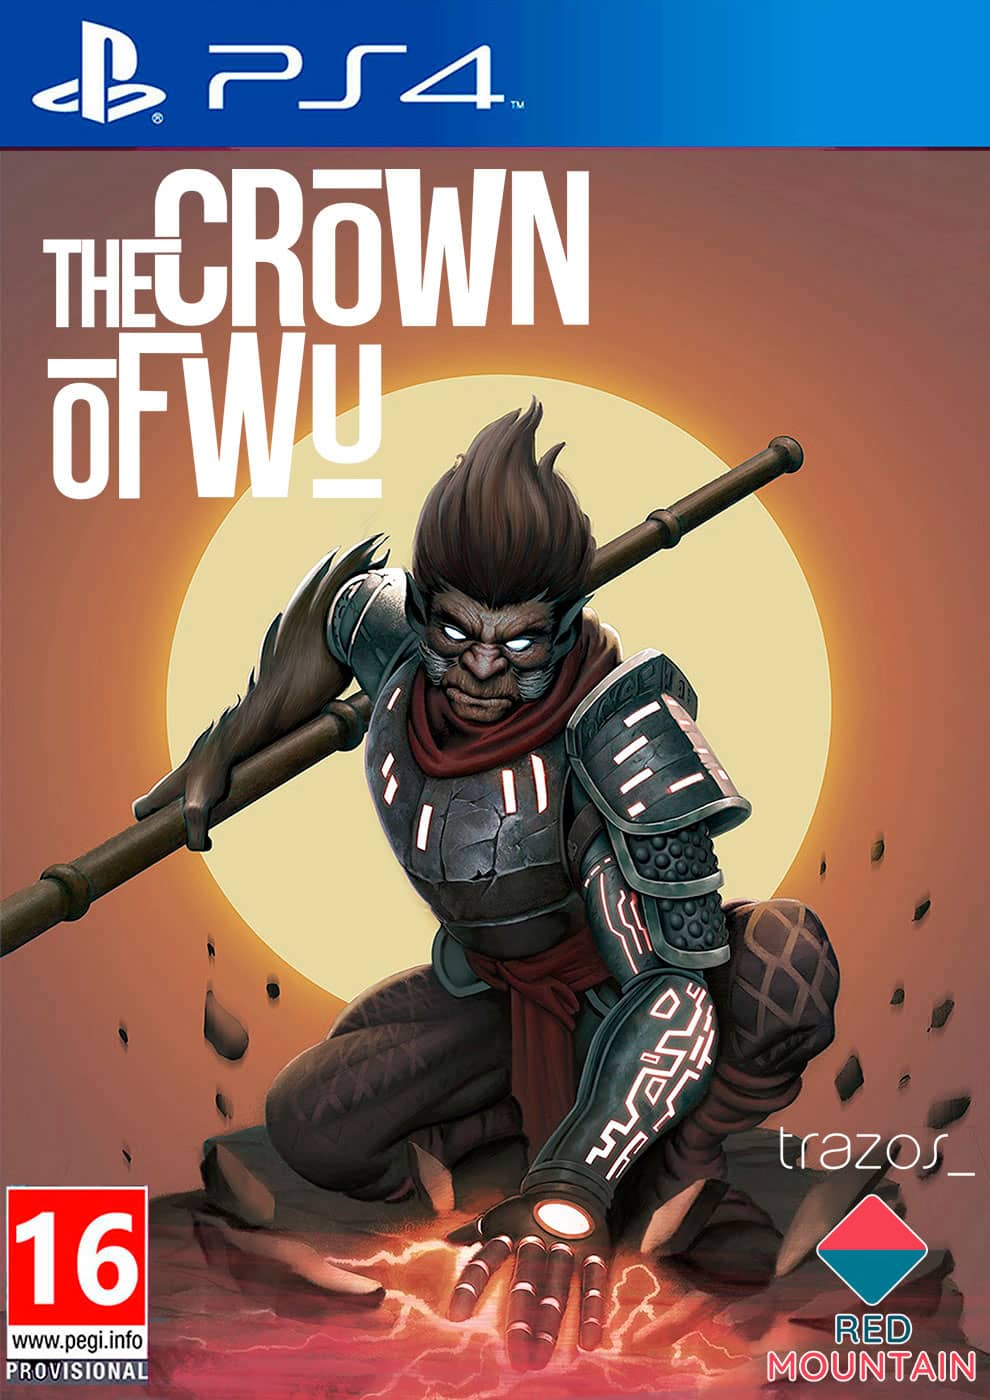 The Corwn Of Wu